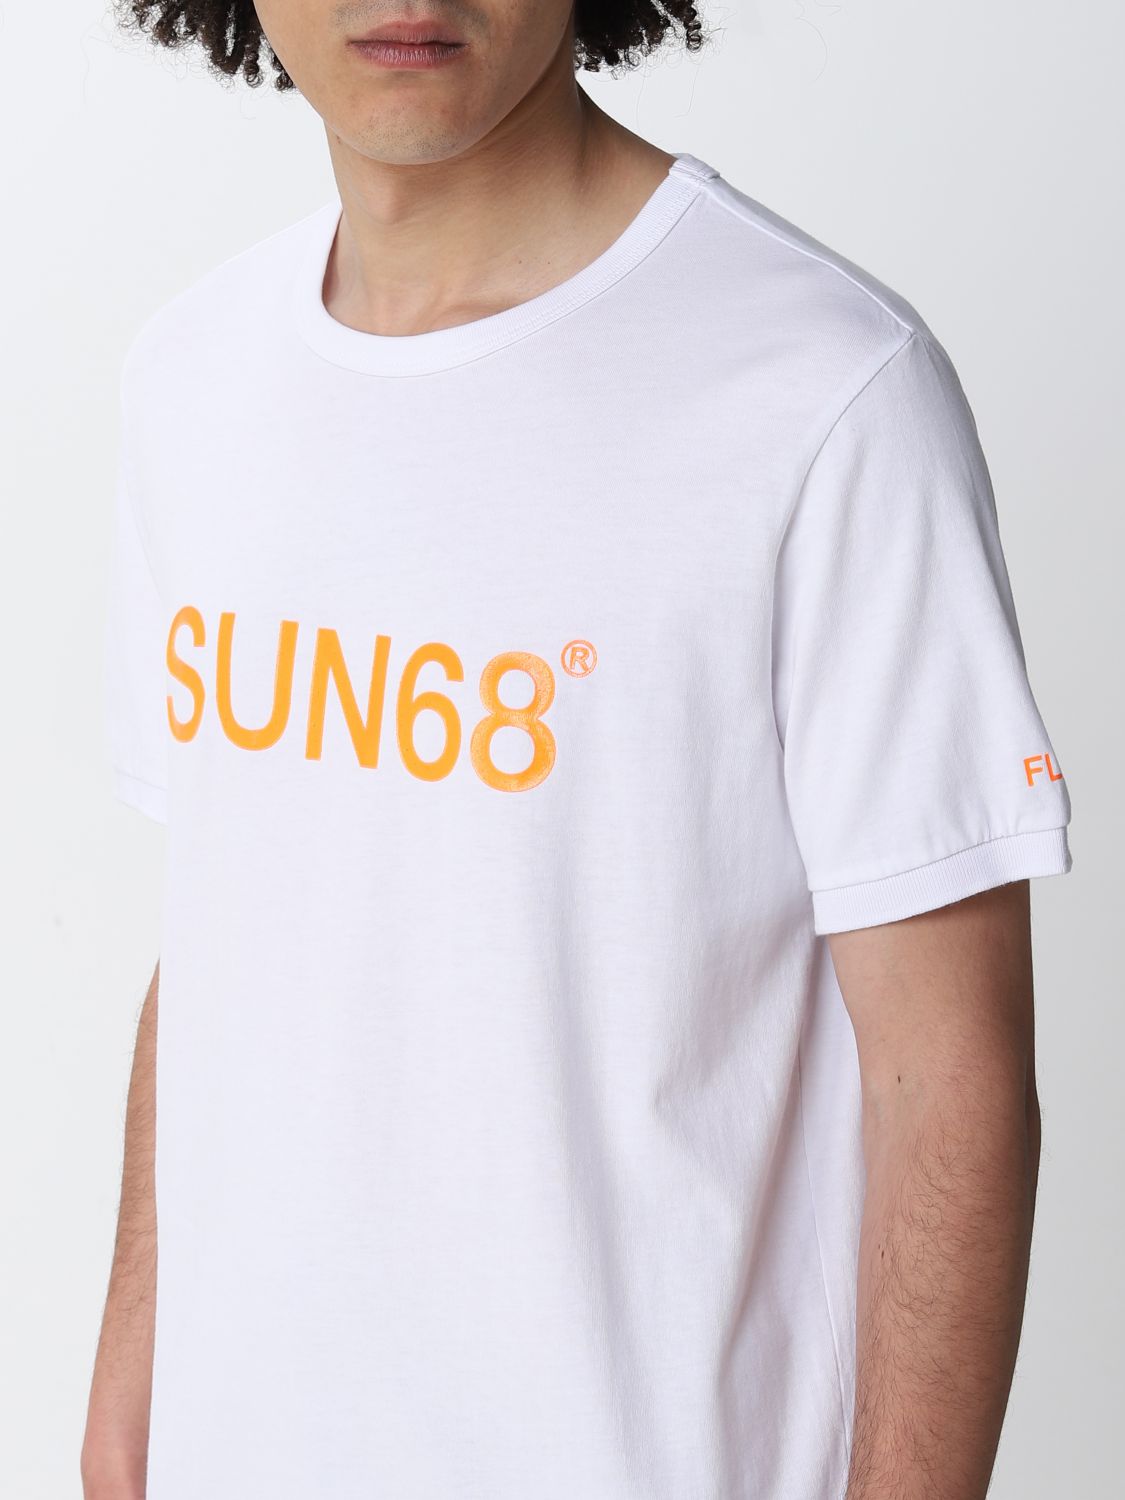 T-Shirt Sun 68: Sun 68 Herren T-Shirt weiß 3